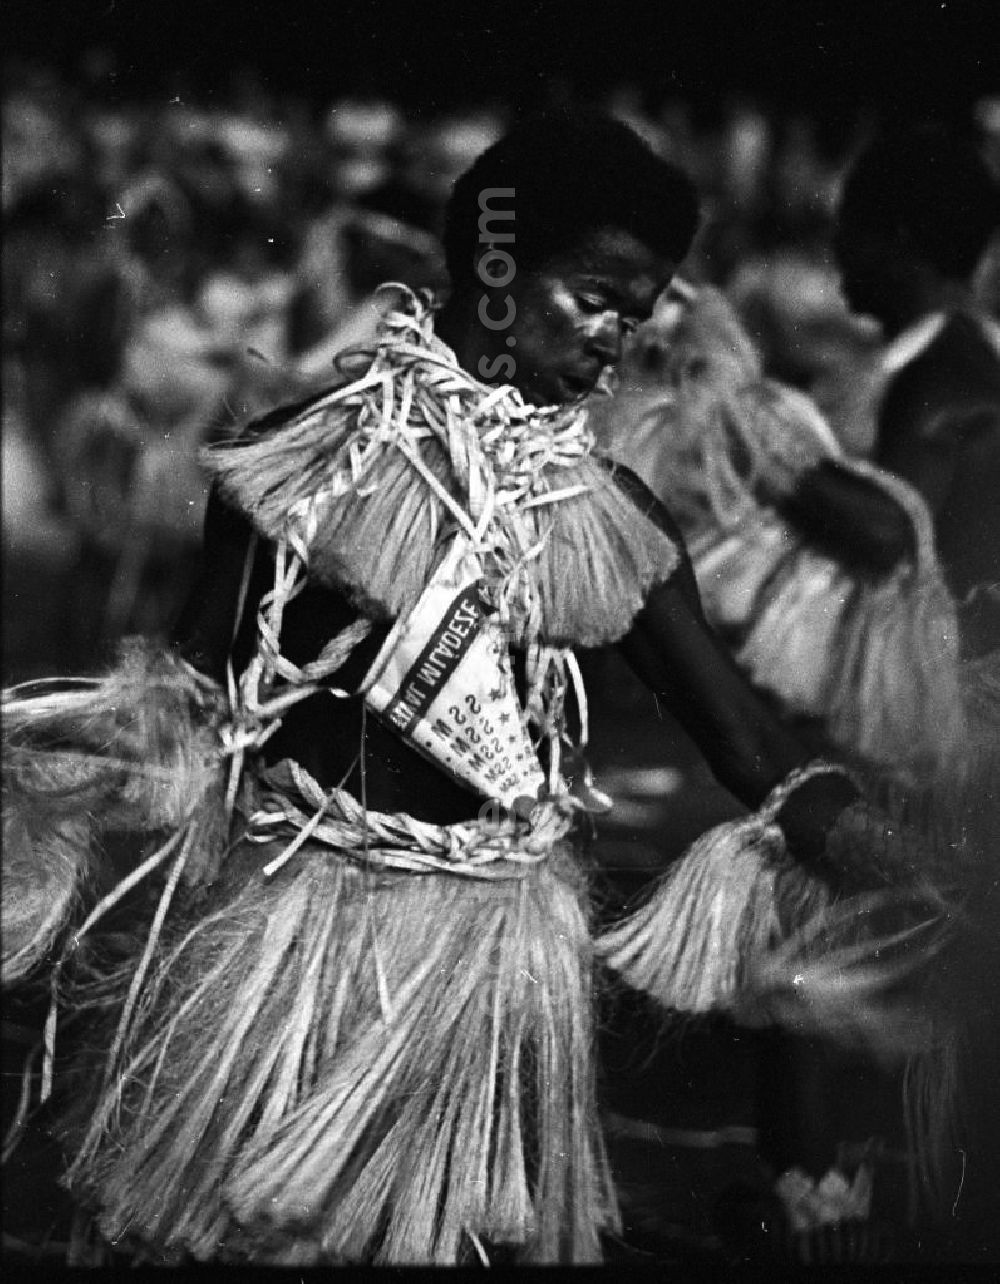 Havanna: Internationaler Karneval während der XI. Weltfestspiele vom 28.07. - 05.08.1978. Portrait eines Tänzers aus Mosambik / Afrika. Das Festival stand unter dem Motto: Für antiimperialistische Solidarität, Frieden und Freundschaft. 18.500 Jugendliche aus 145 Ländern nahmen teil, darunter 20